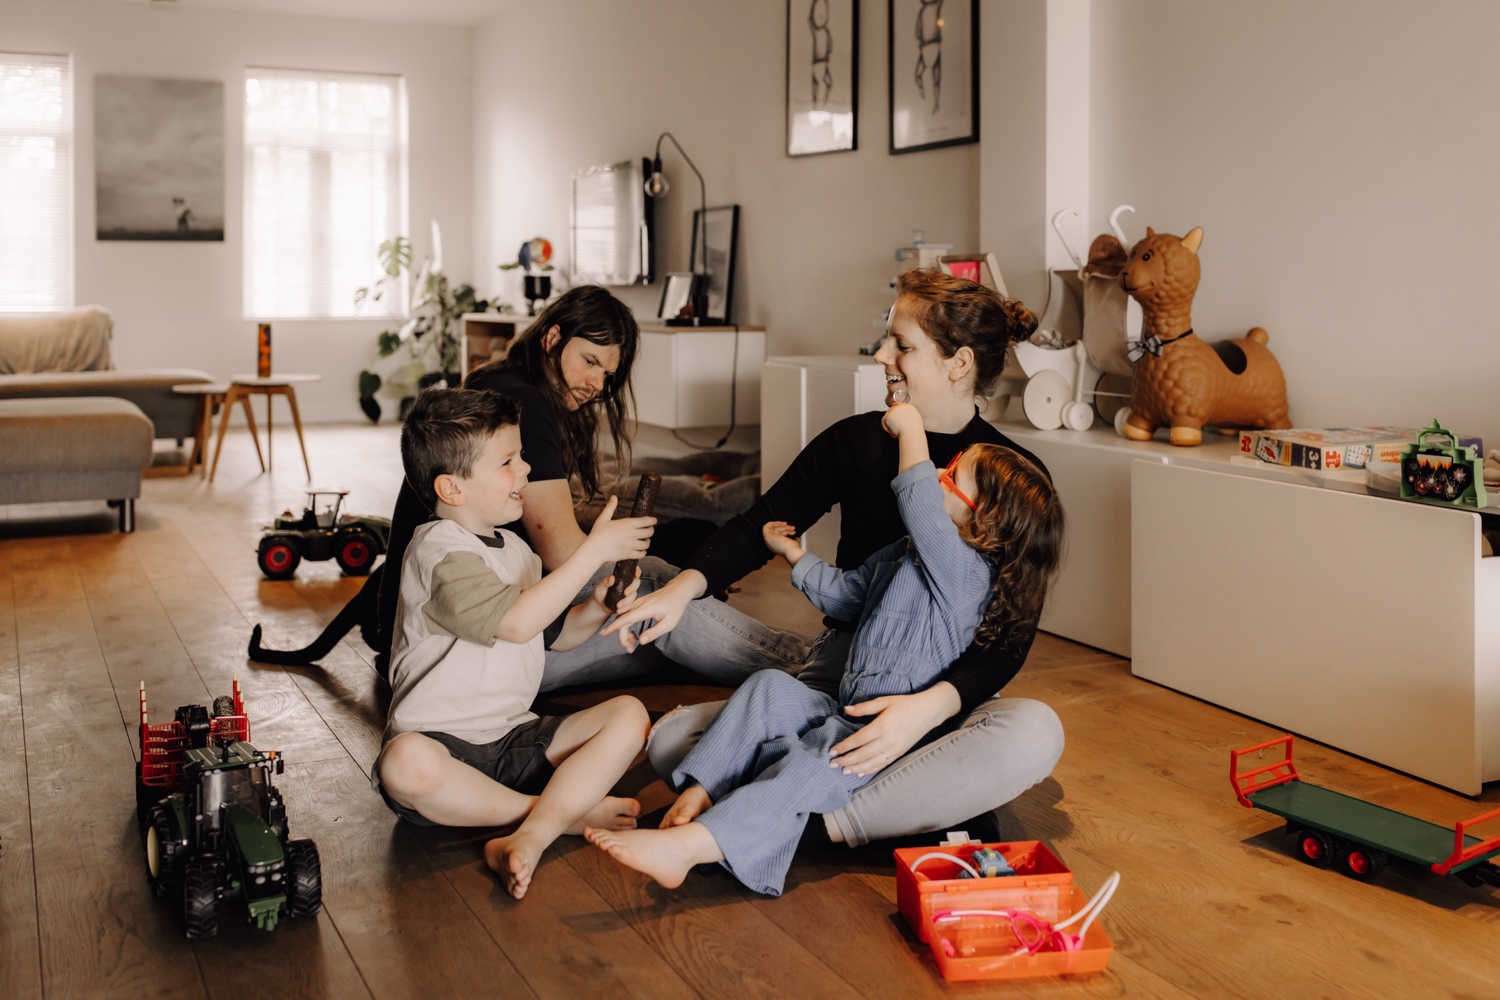 Gezinsfotograaf Limburg - gezin speelt samen op de grond in de living